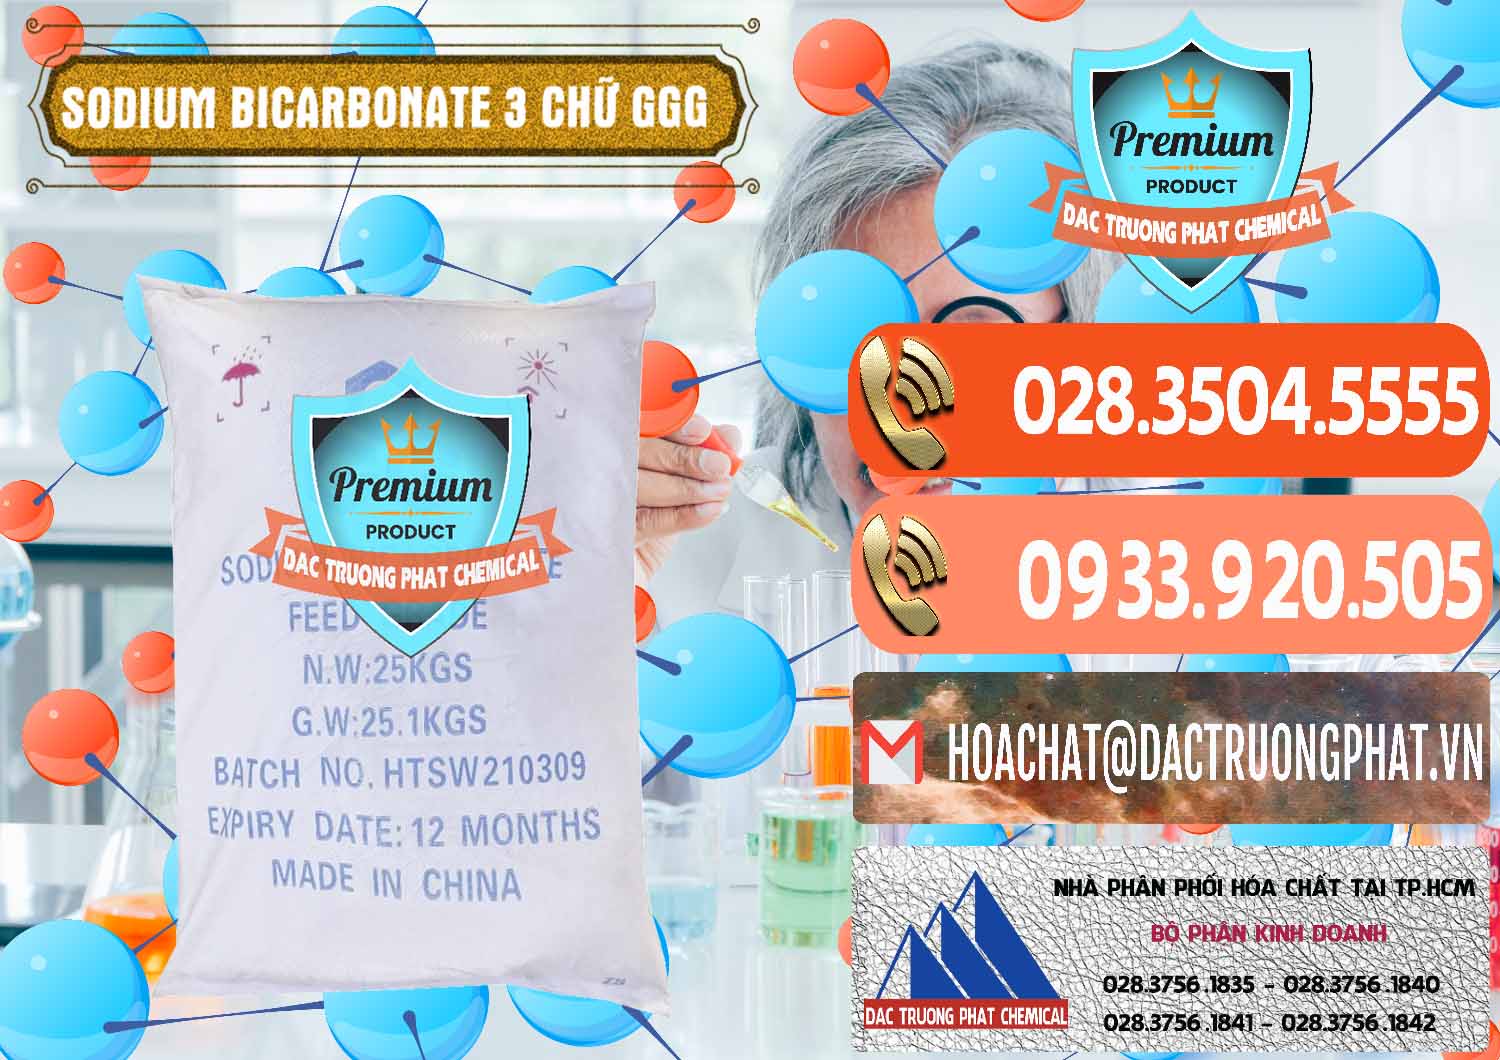 Chuyên cung ứng - bán Sodium Bicarbonate – Bicar NaHCO3 Food Grade 3 Chữ GGG Trung Quốc China - 0259 - Kinh doanh & phân phối hóa chất tại TP.HCM - hoachatmientay.com